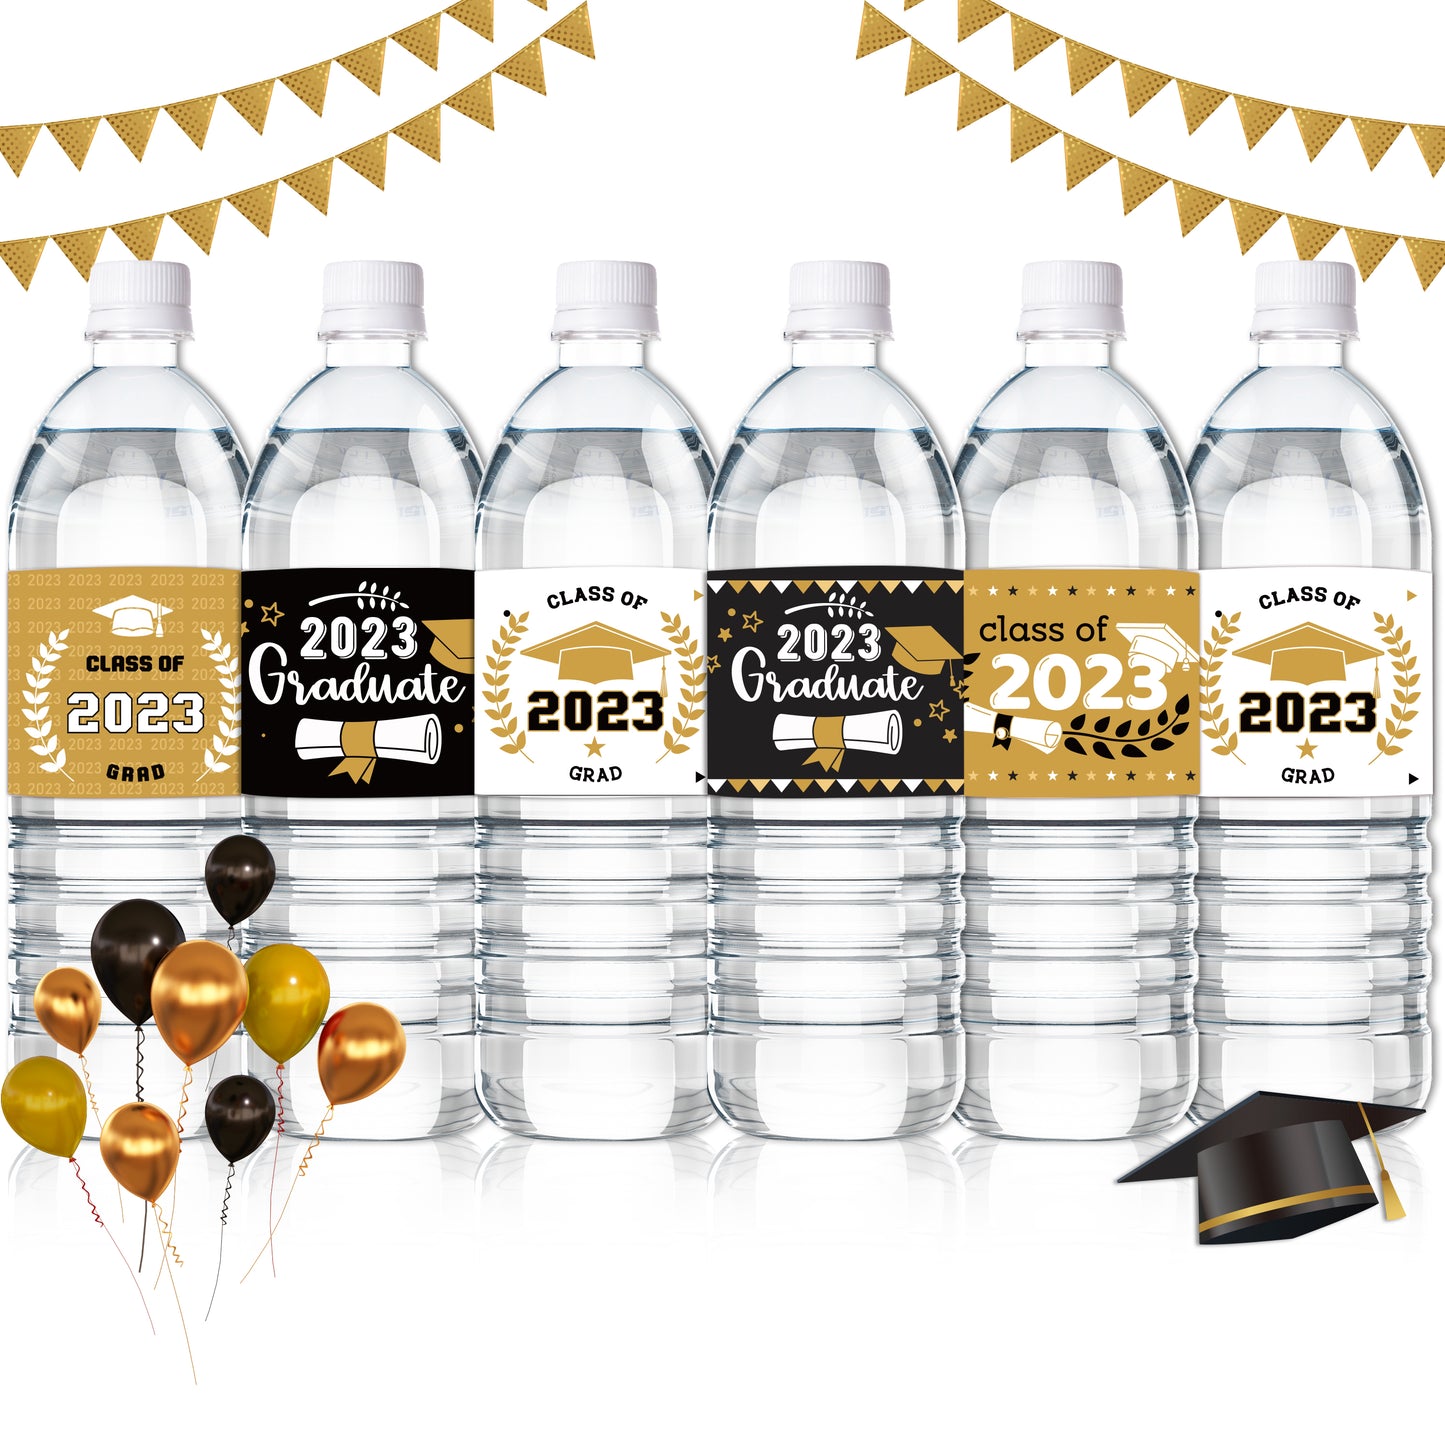 COcnny 120pcs Graduation Water Bottle Labels, Graduation Decorations Sticker Class of 2024 Congrats Grad Party Supplies, Bottle Wrappers Label Decor for High School College Graduate Celebration (Gold)